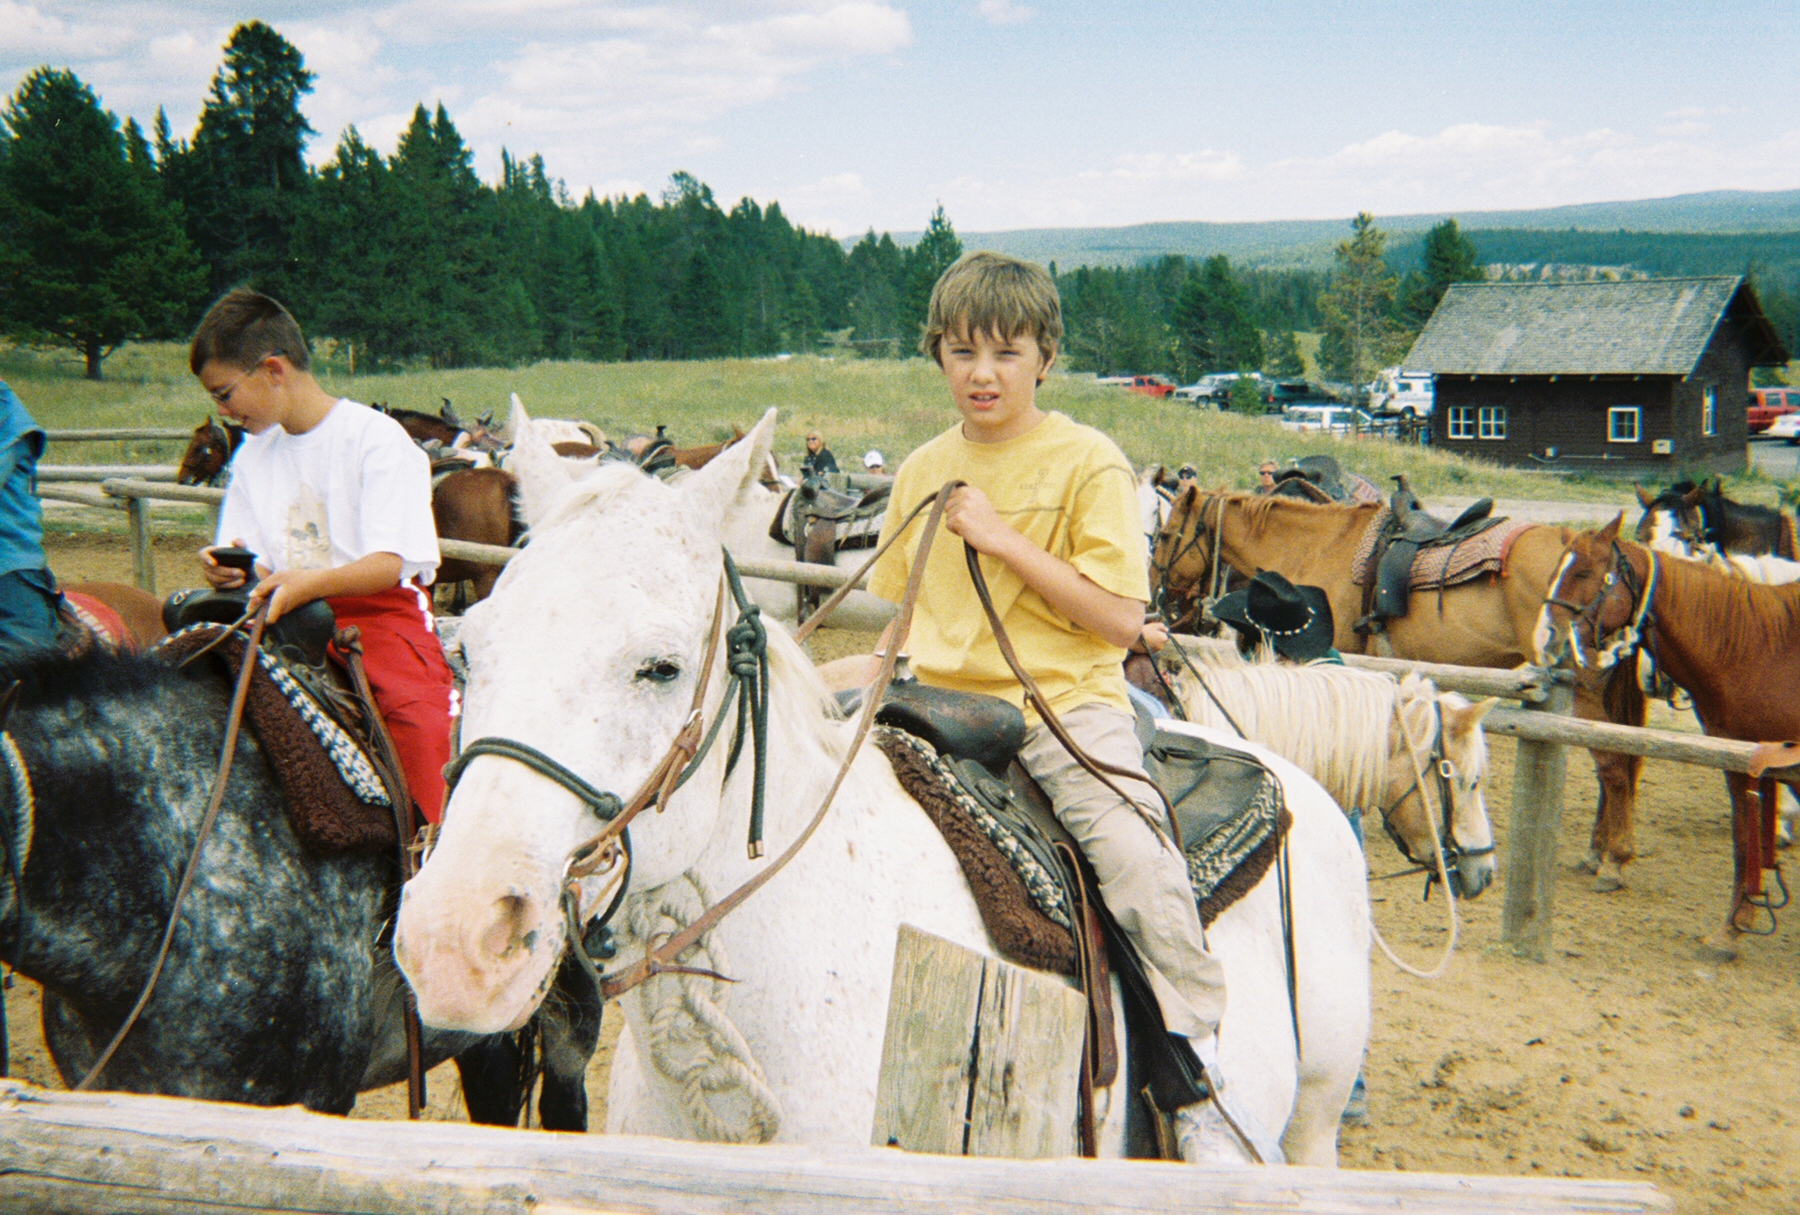 Jacob on a horse.